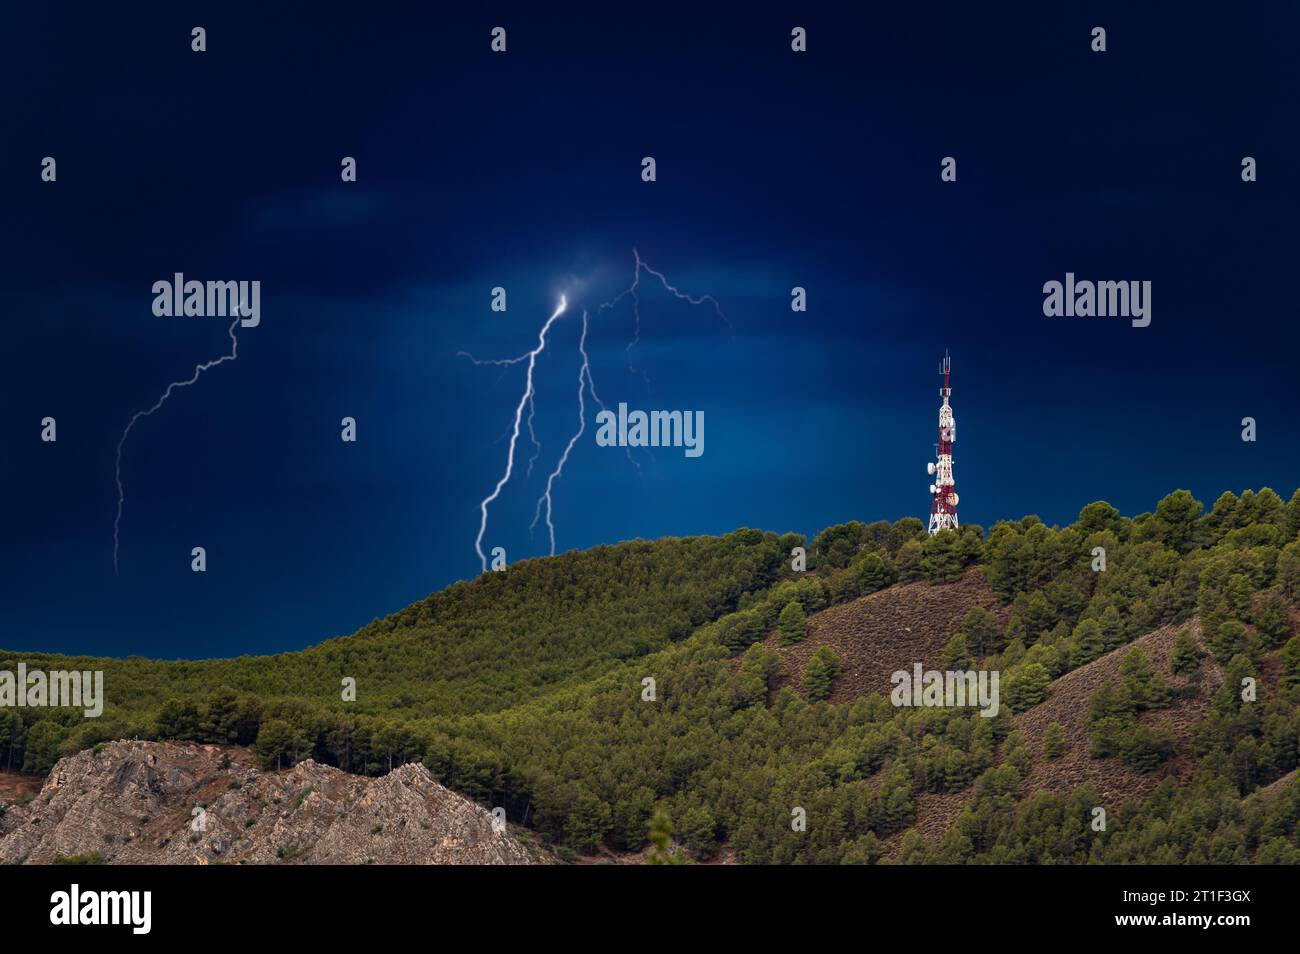 Tempesta con fulmini che colpisce vicino a una grande antenna per telecomunicazioni su una collina con alberi Foto Stock